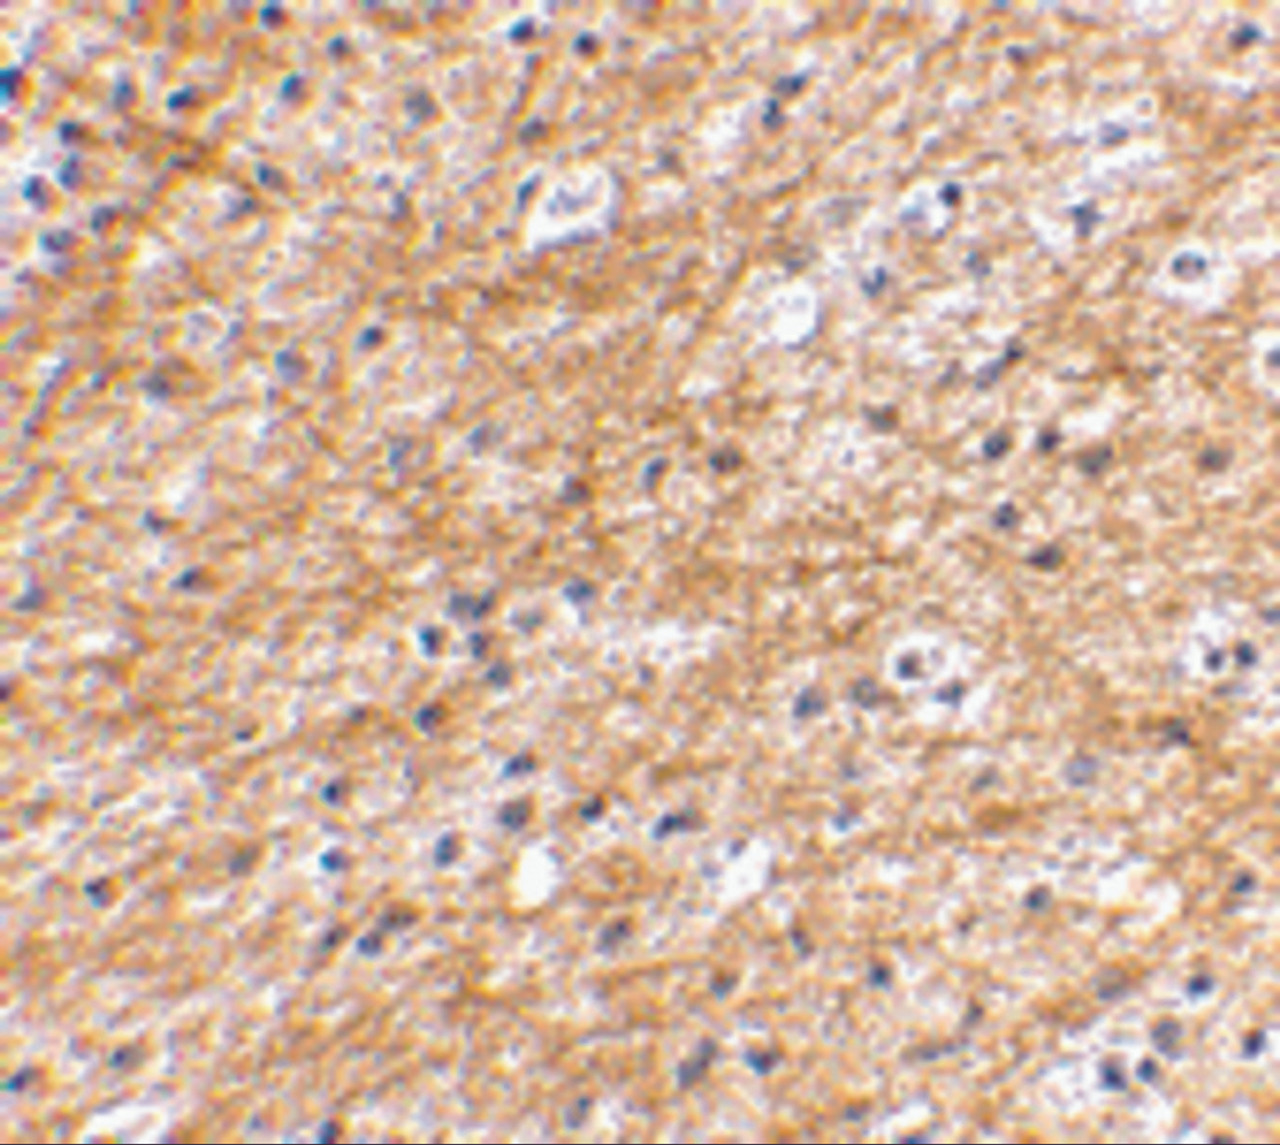 Immunohistochemical staining of human brain tissue using AIFM3 antibody at 2.5 ug/mL.